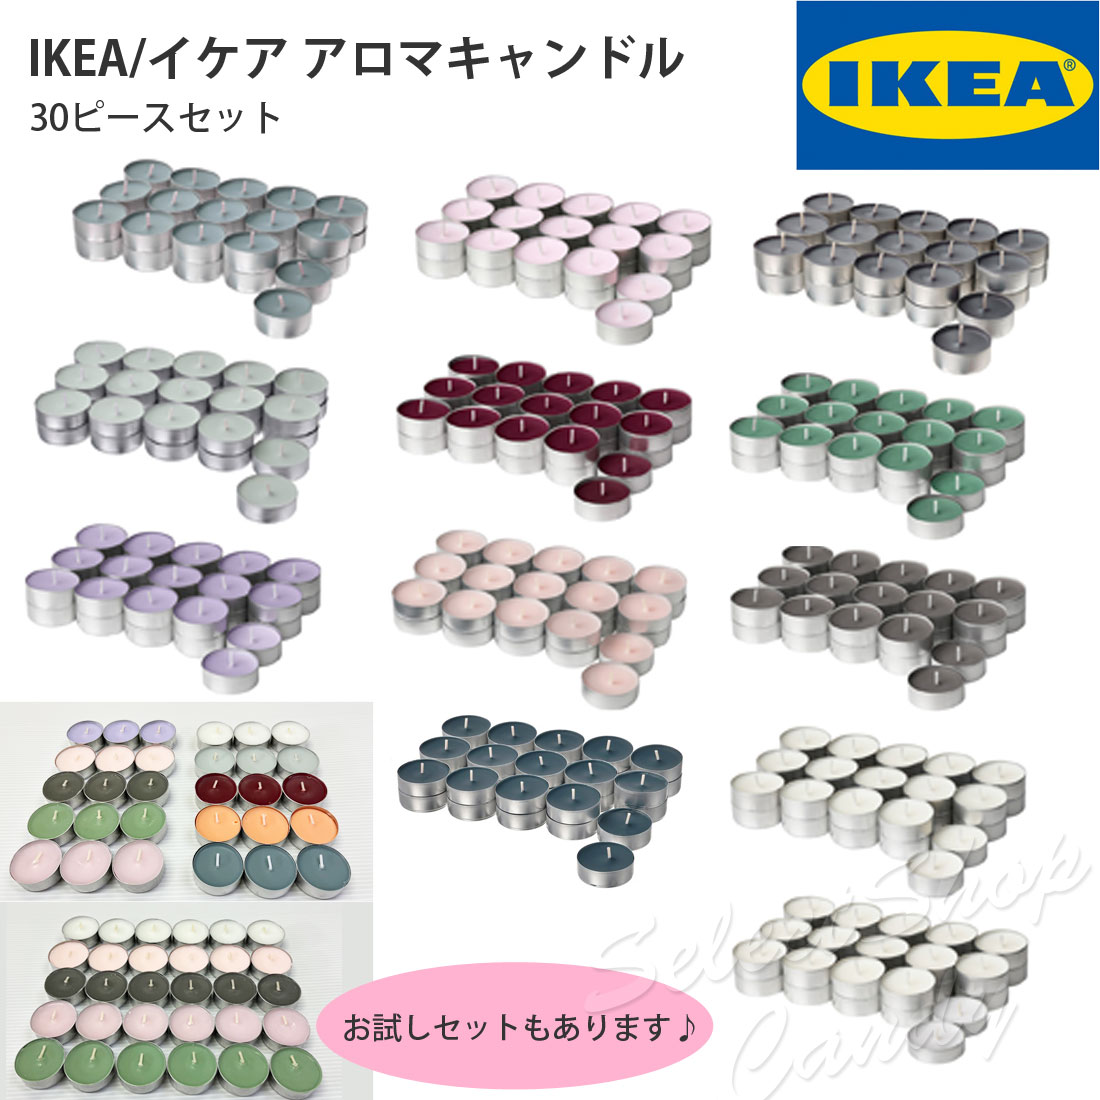 ●送料無料● IKEA イケア アロマティーライトキャンドル アロマキャンドル お試しセット LT-08